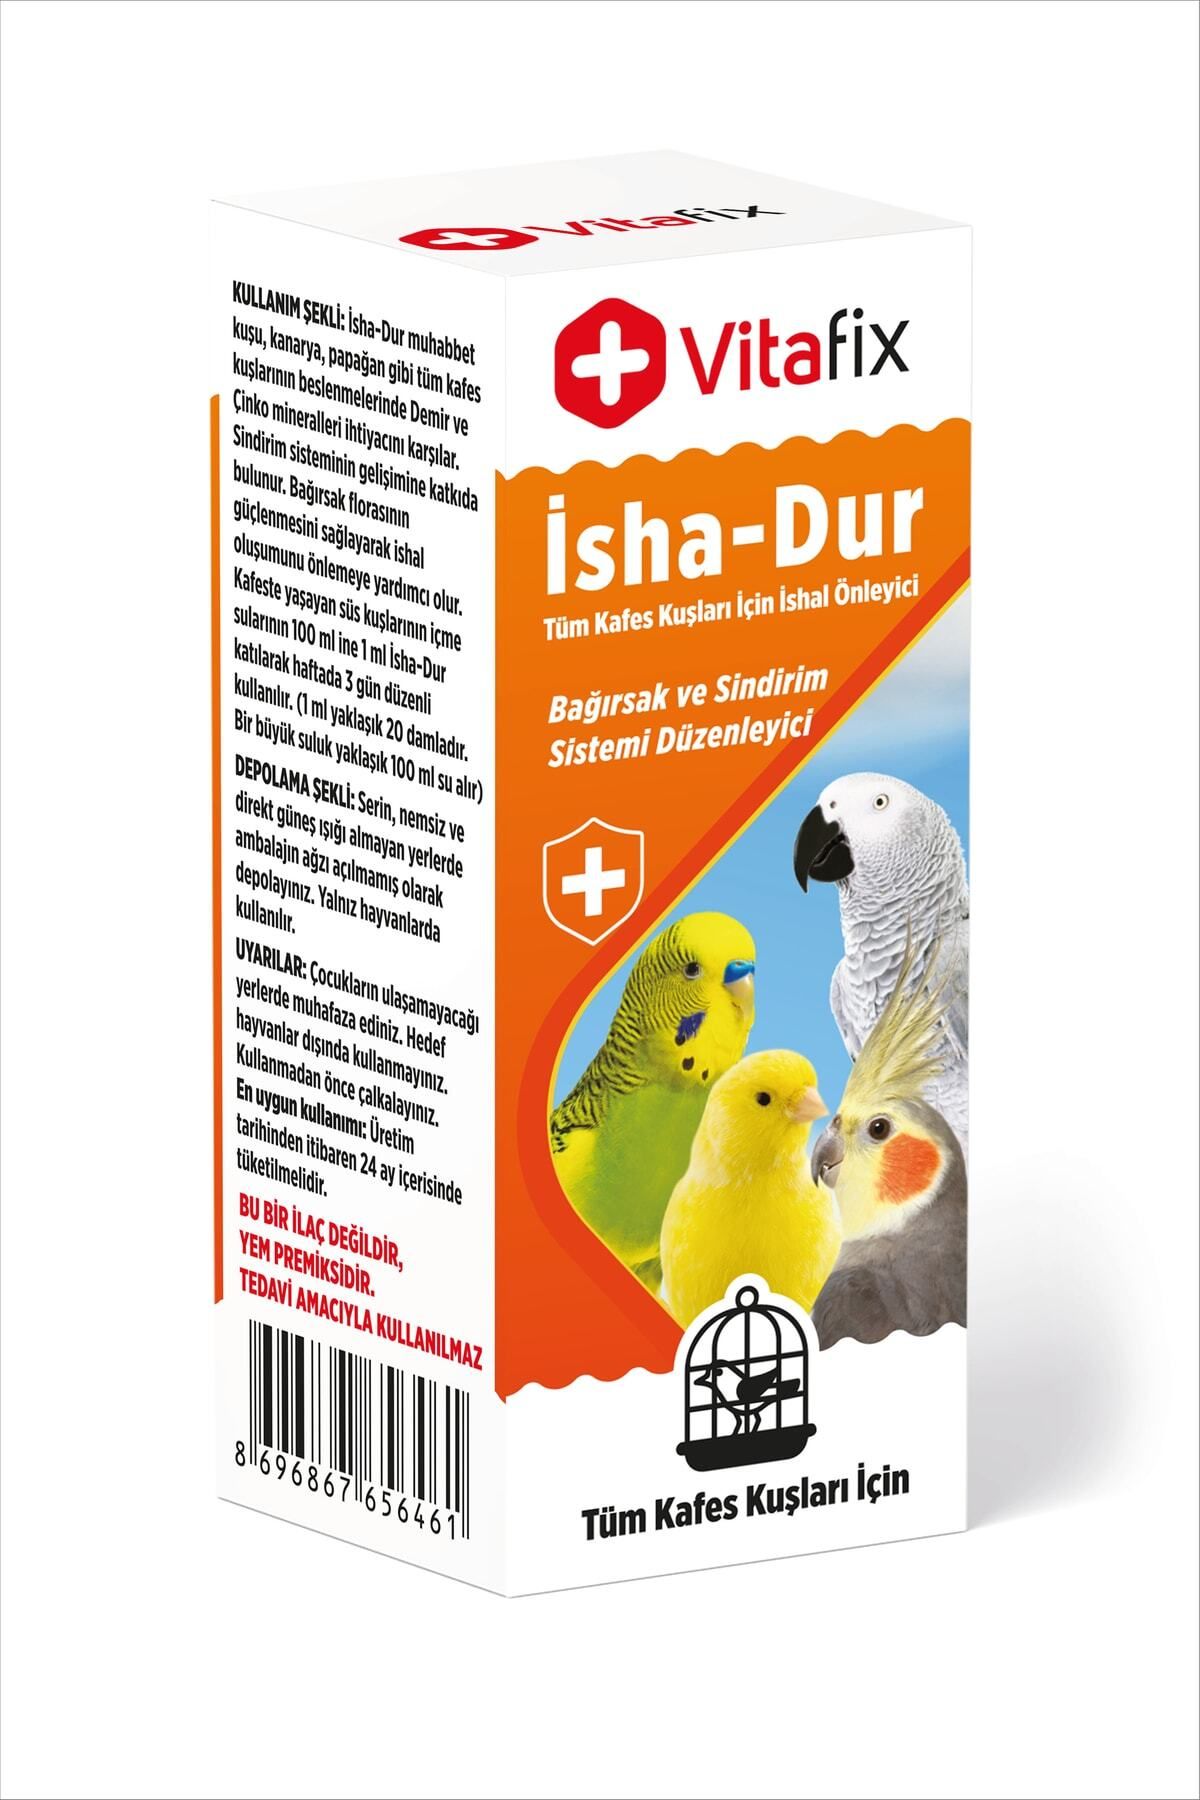 Vitafix Isha-dur - Kuşlar Için Bağırsak Ve Sindirim Sistemi Düzenleyici - Ishal Gidermeye Yardımcı